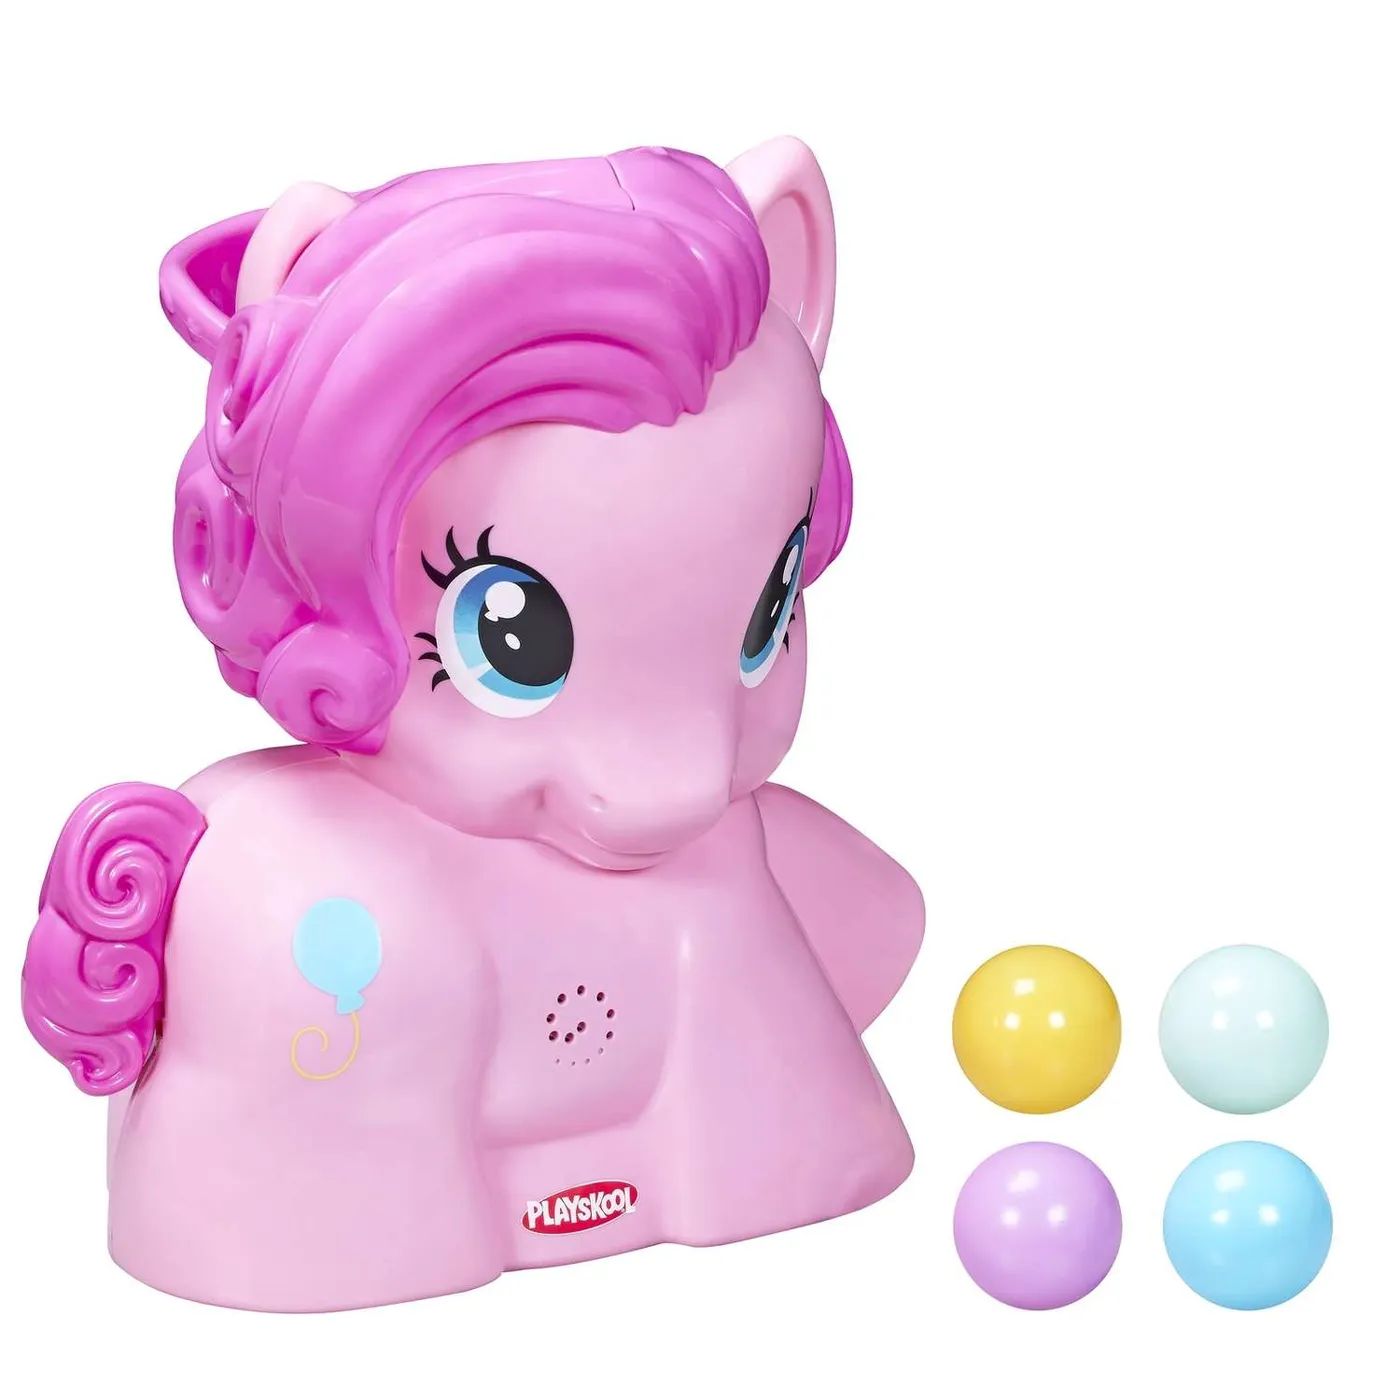 Пинки пай купить. Малютка пони Пинки Пай Hasbro 29208. Интерактивная игрушка Hasbro пони "Пинки Пай" 29208121. Пинки Пай интерактивная игрушка Хасбро. Playskool my little Pony.